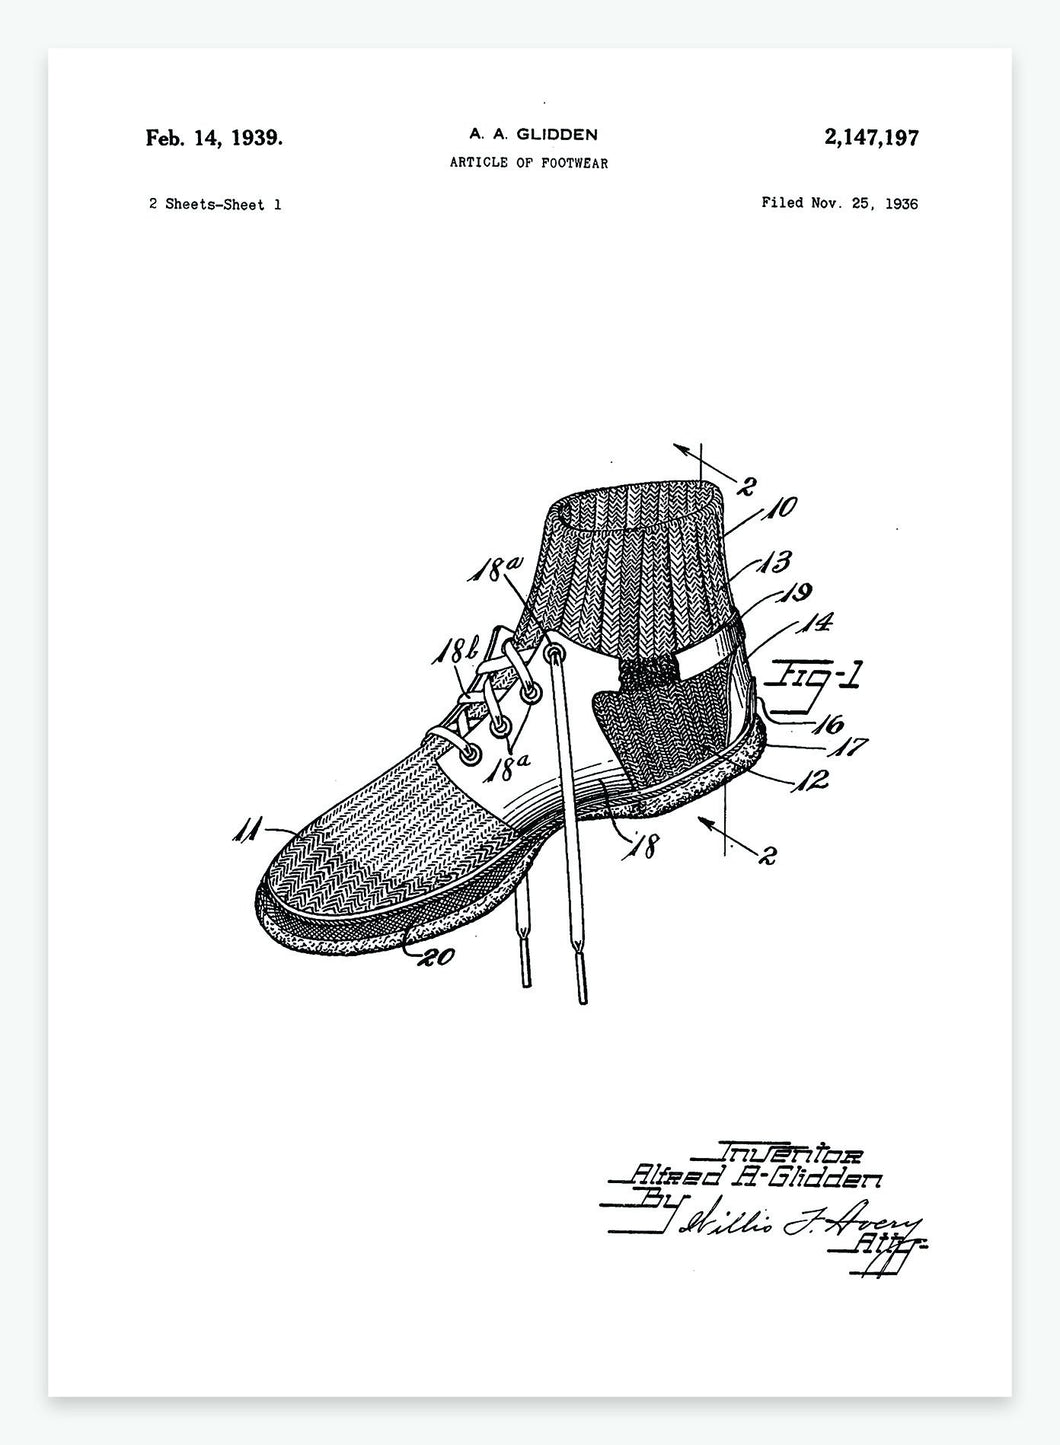 Sko | Smukt patent til din væg | plakat | poster - decoARTE